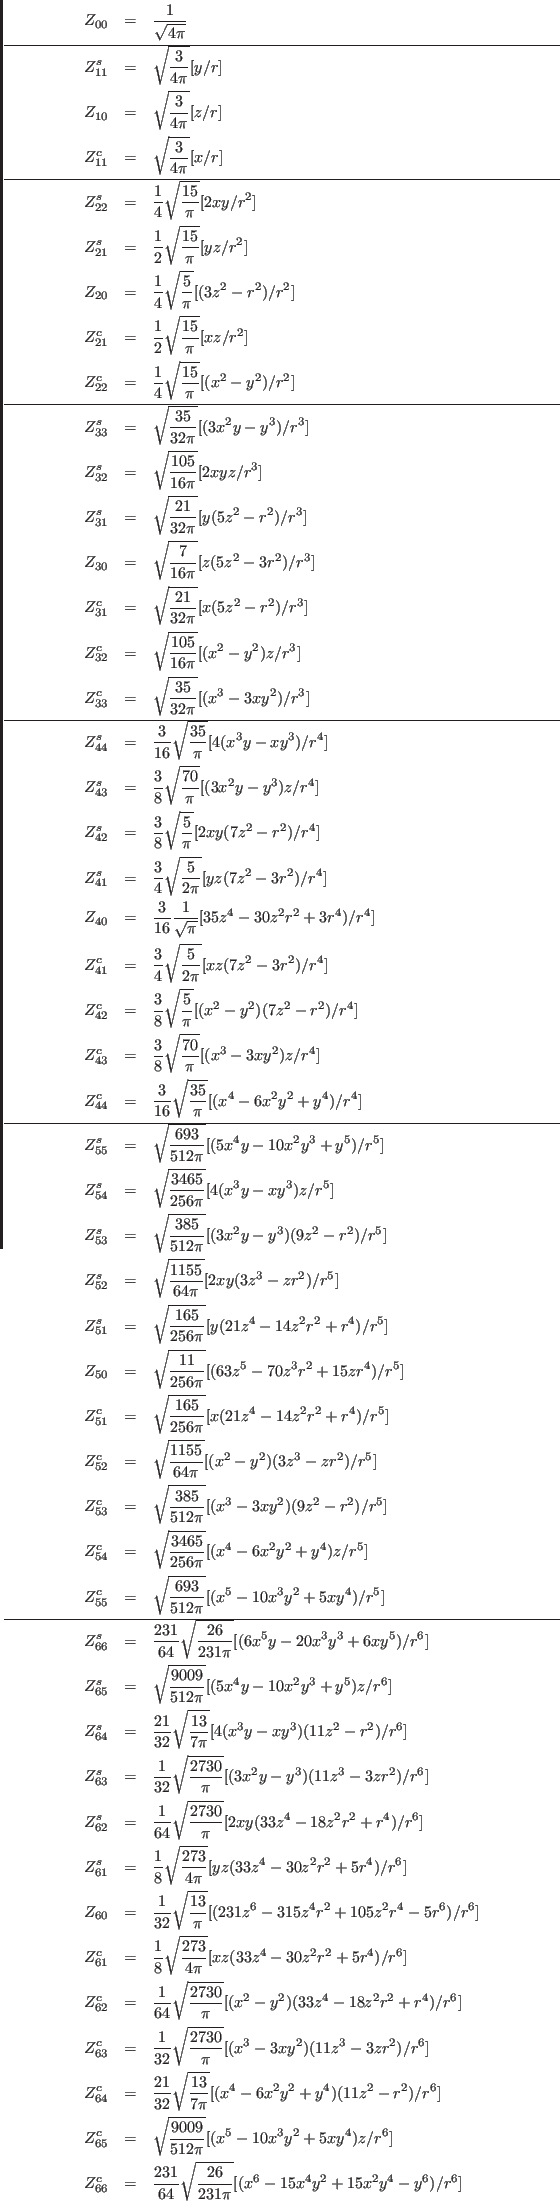 \begin{eqnarray*}
Z_{00}&=&\frac{1}{\sqrt{4\pi}}\\
\hline
Z^s_{11}&=&\sqrt{\fra...
...1}{64}\sqrt{\frac{26}{231\pi}}[(x^6-15x^4y^2+15x^2y^4-y^6)/r^6]
\end{eqnarray*}